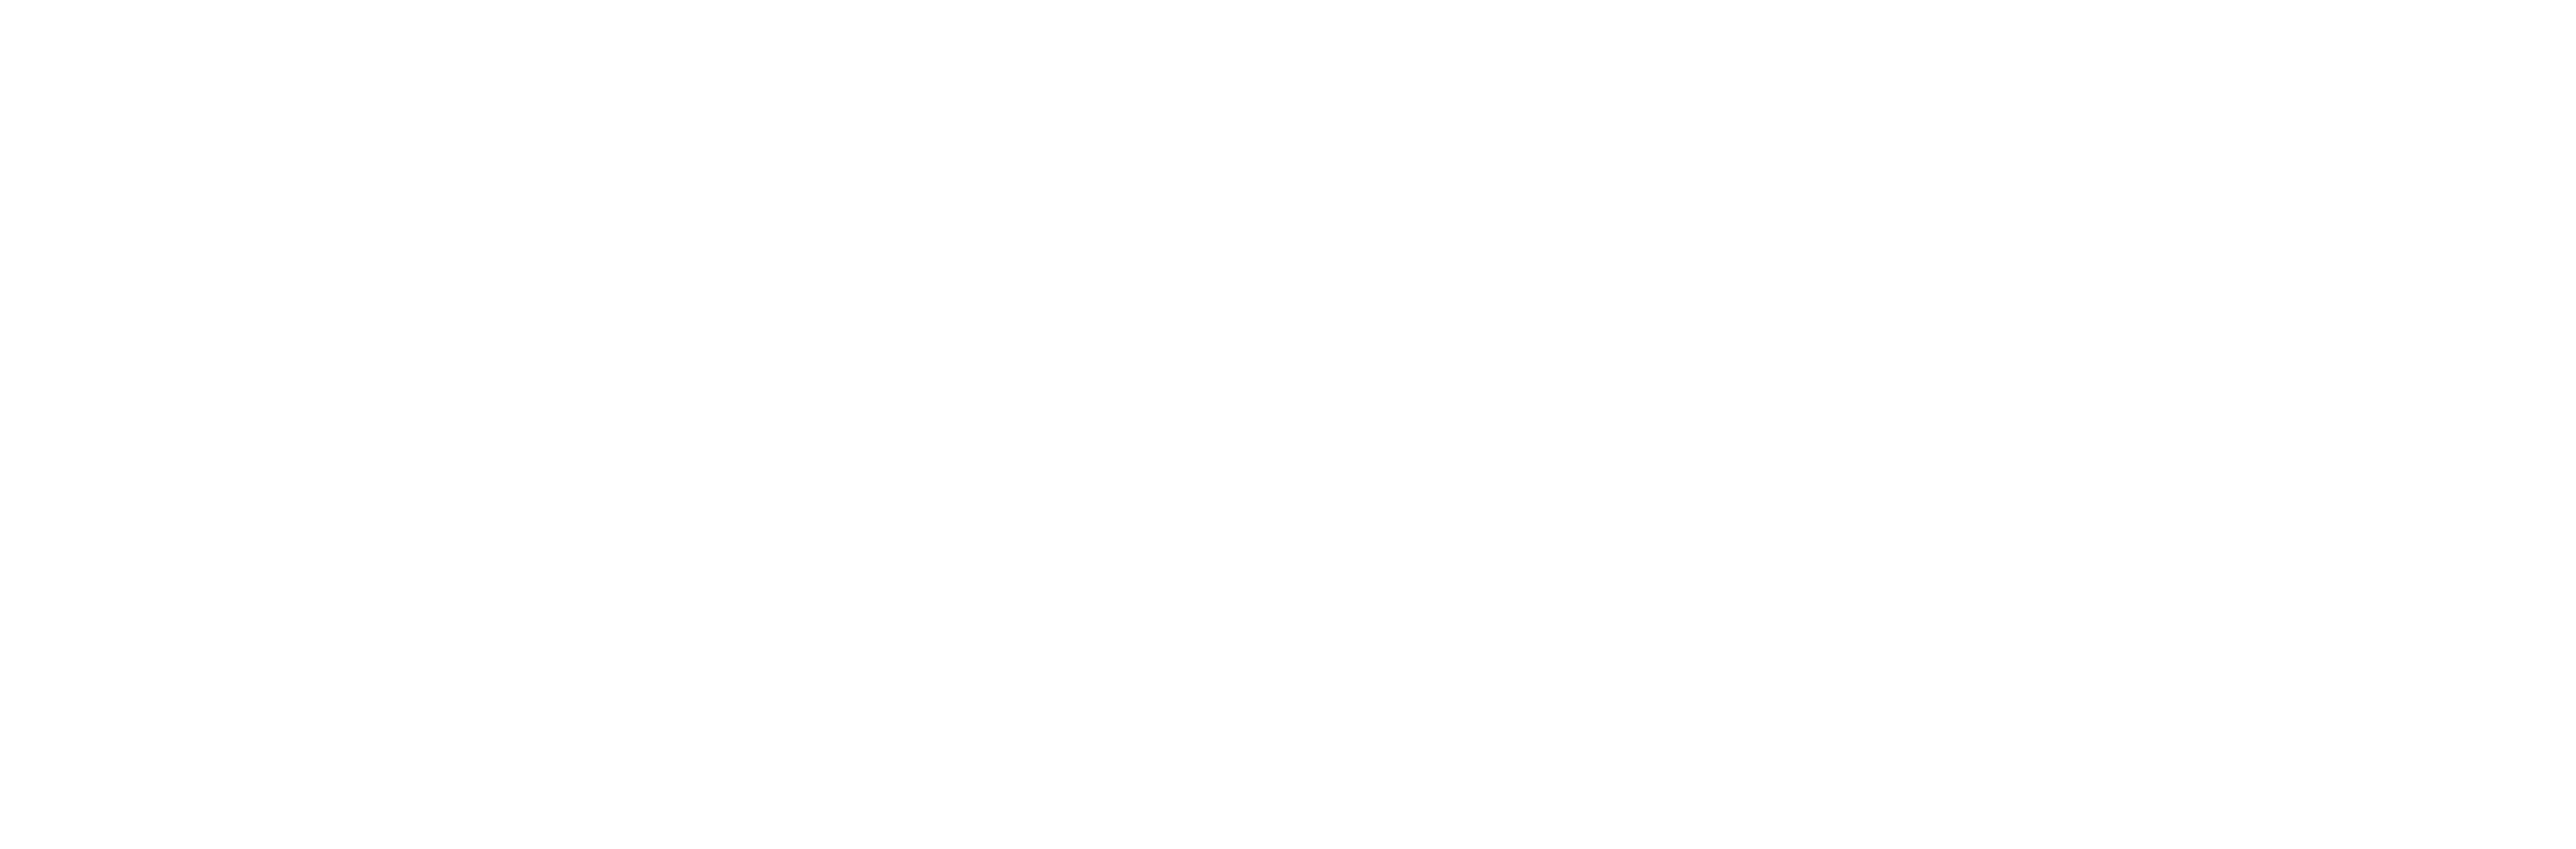 Colégio Piaget